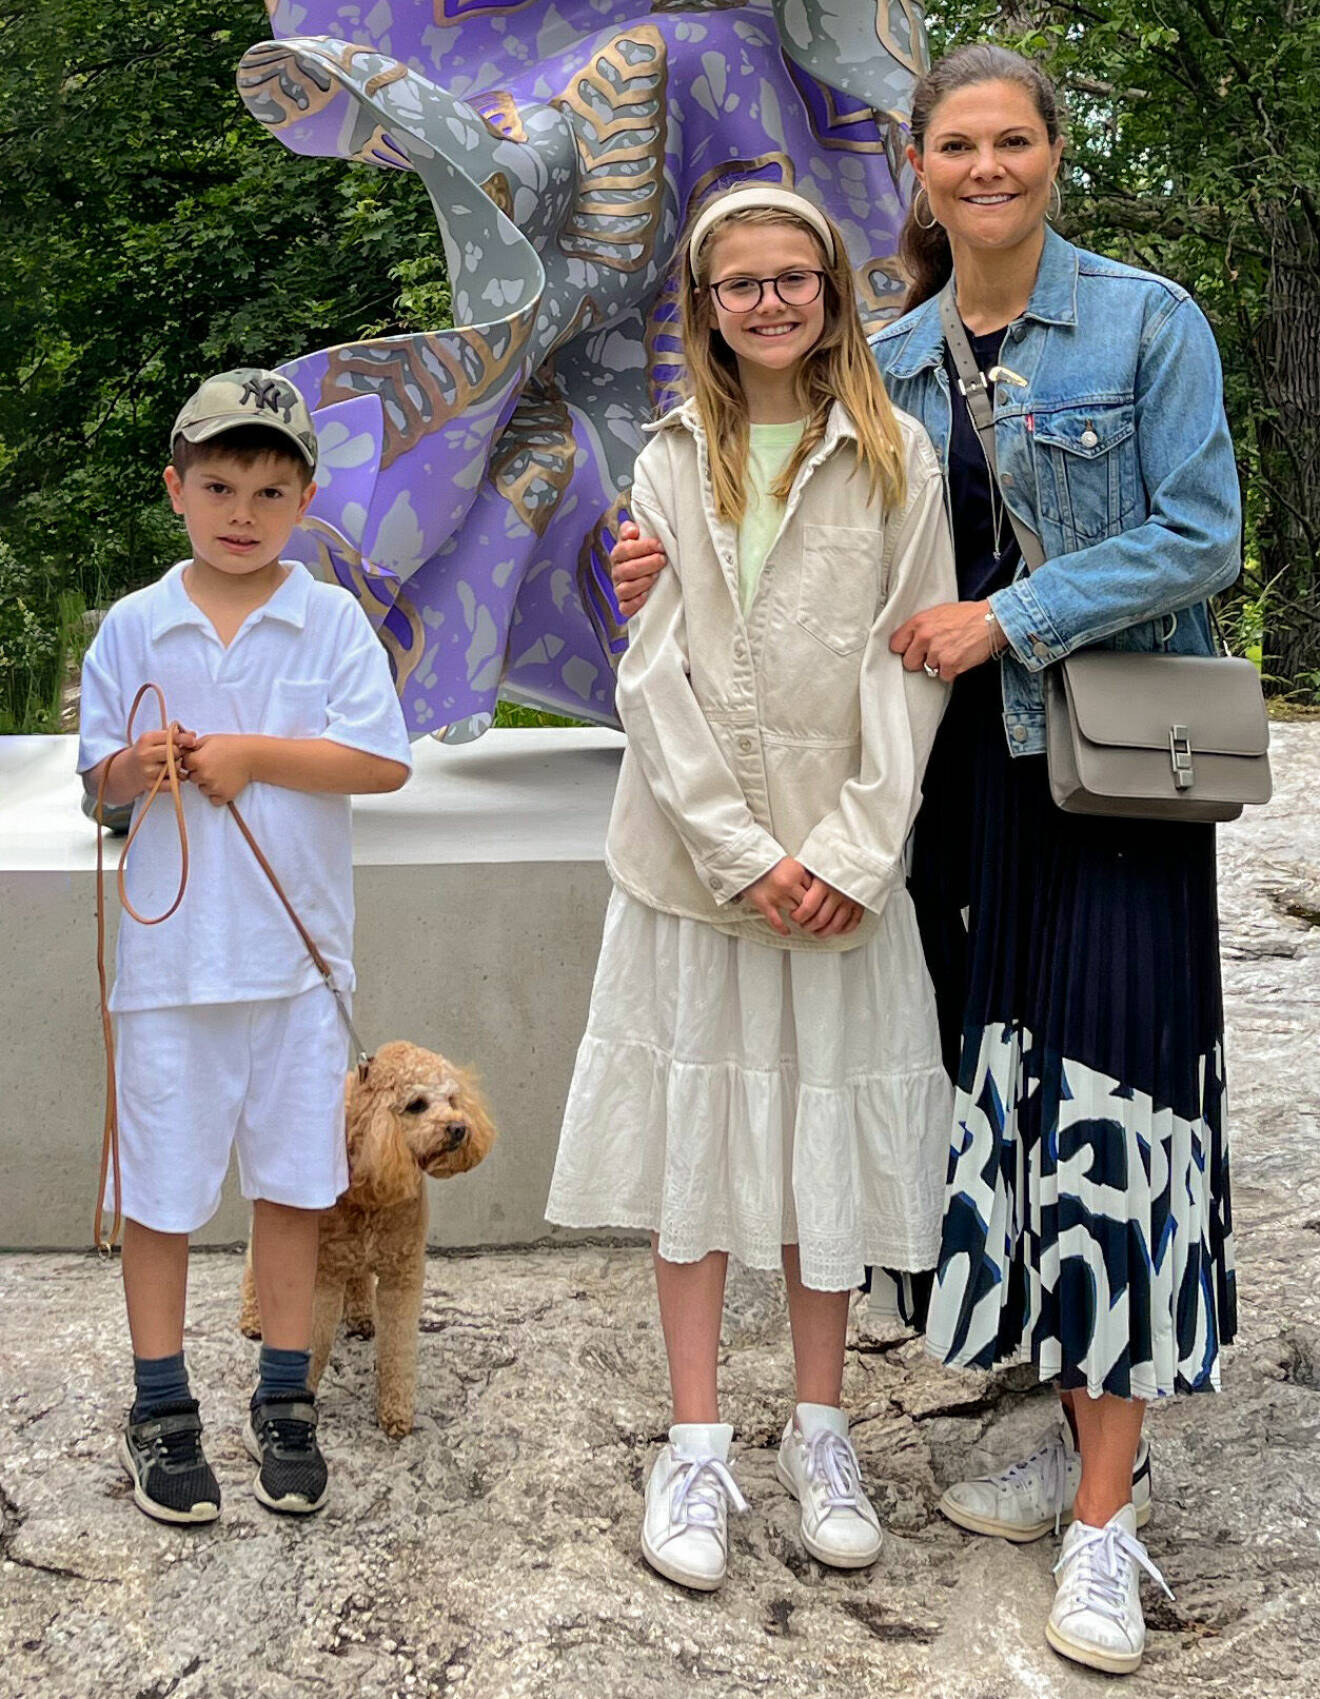 Prinsessan Estelle på besök i Prinsessan Estelles skulpturpark på Djurgården i Stockholm med prins Oscar, hunden Rio och kronprinsessan Victoria